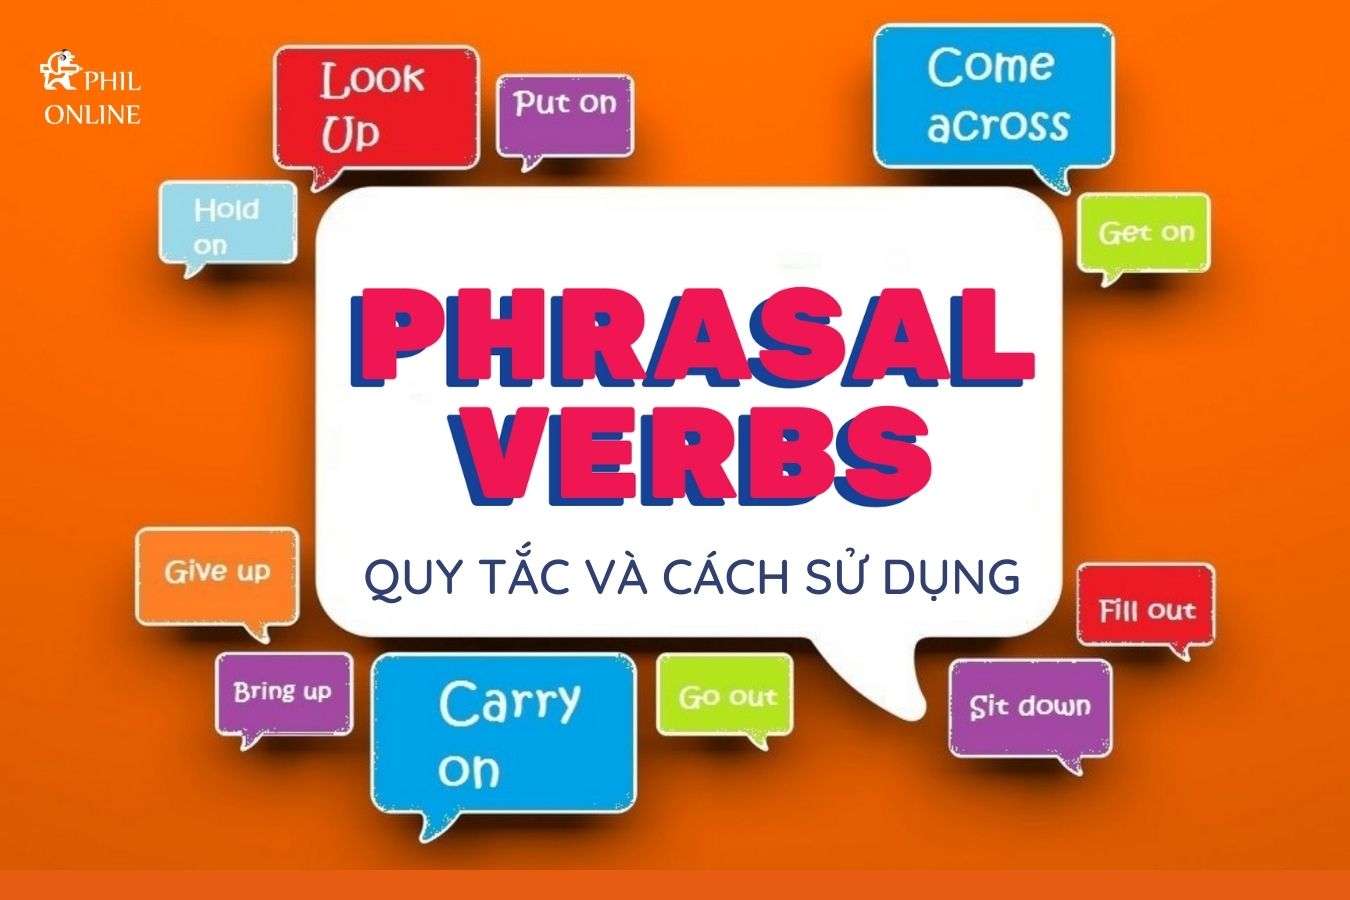 Cụm động từ (Phrasal Verbs): Quy tắc và cách sử dụng